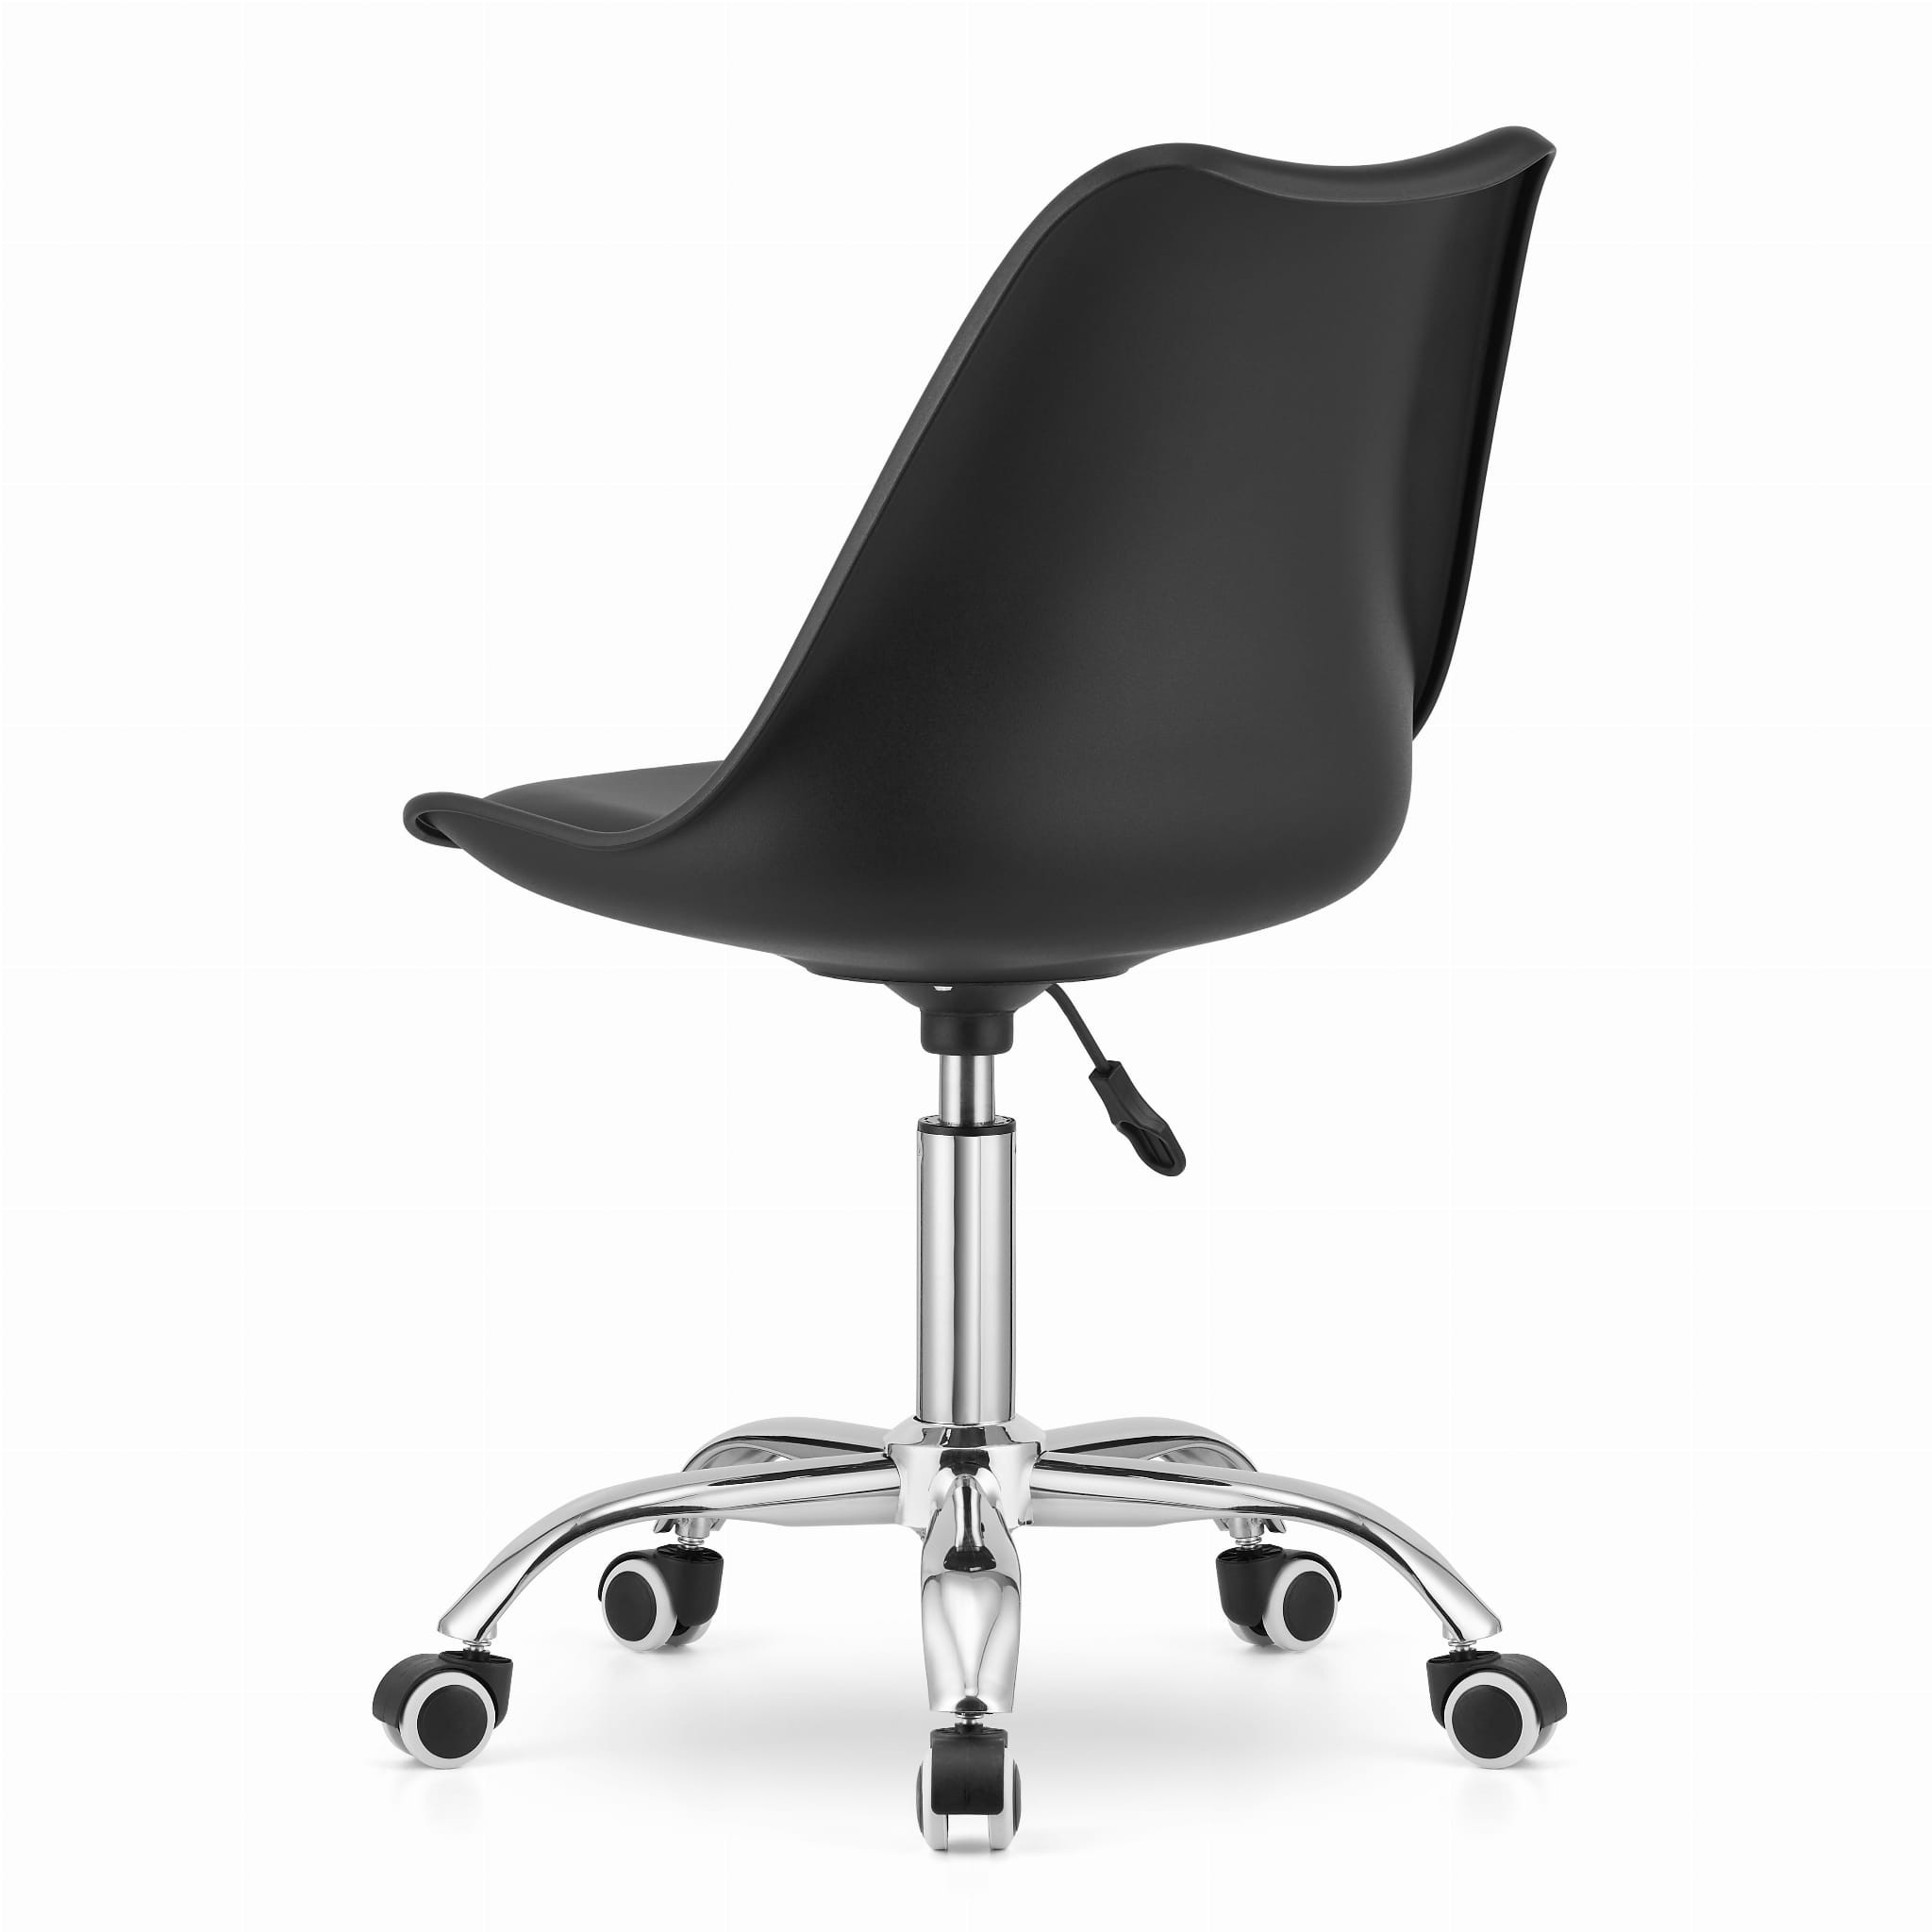 Otočná stolička ALBA - čierna